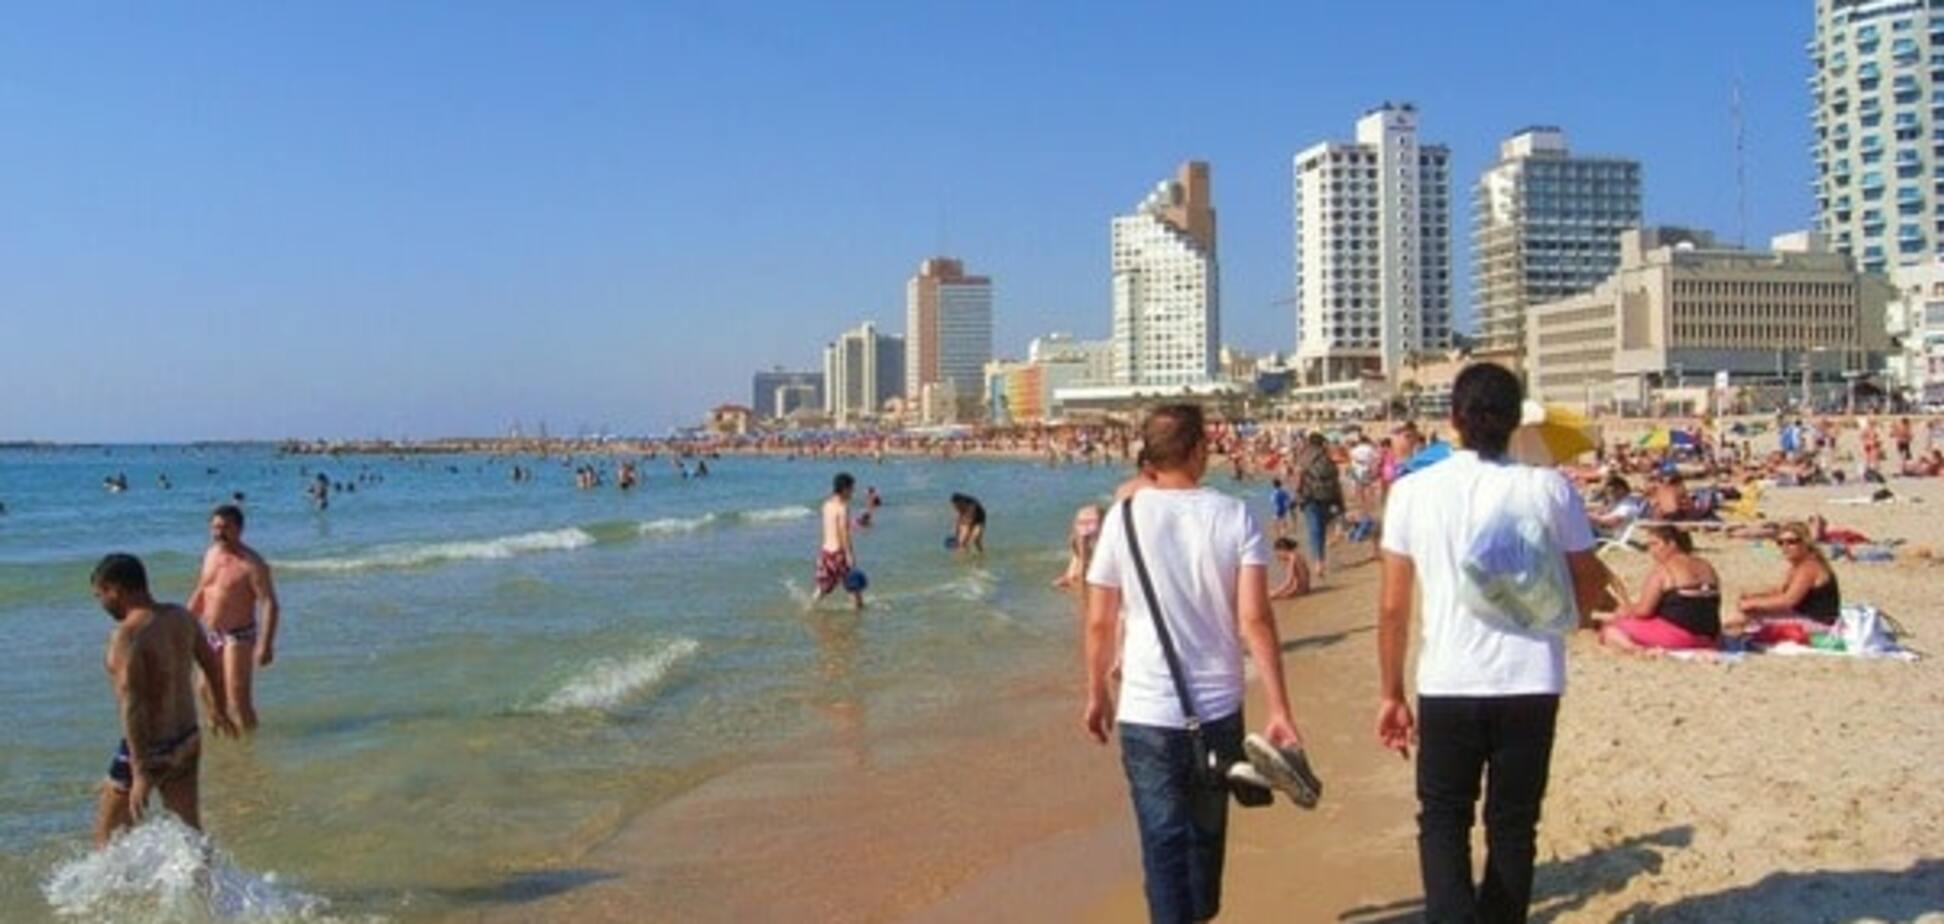 Разговор с богом по мобилке и рассол из Мертвого моря: путешествие в Израиль